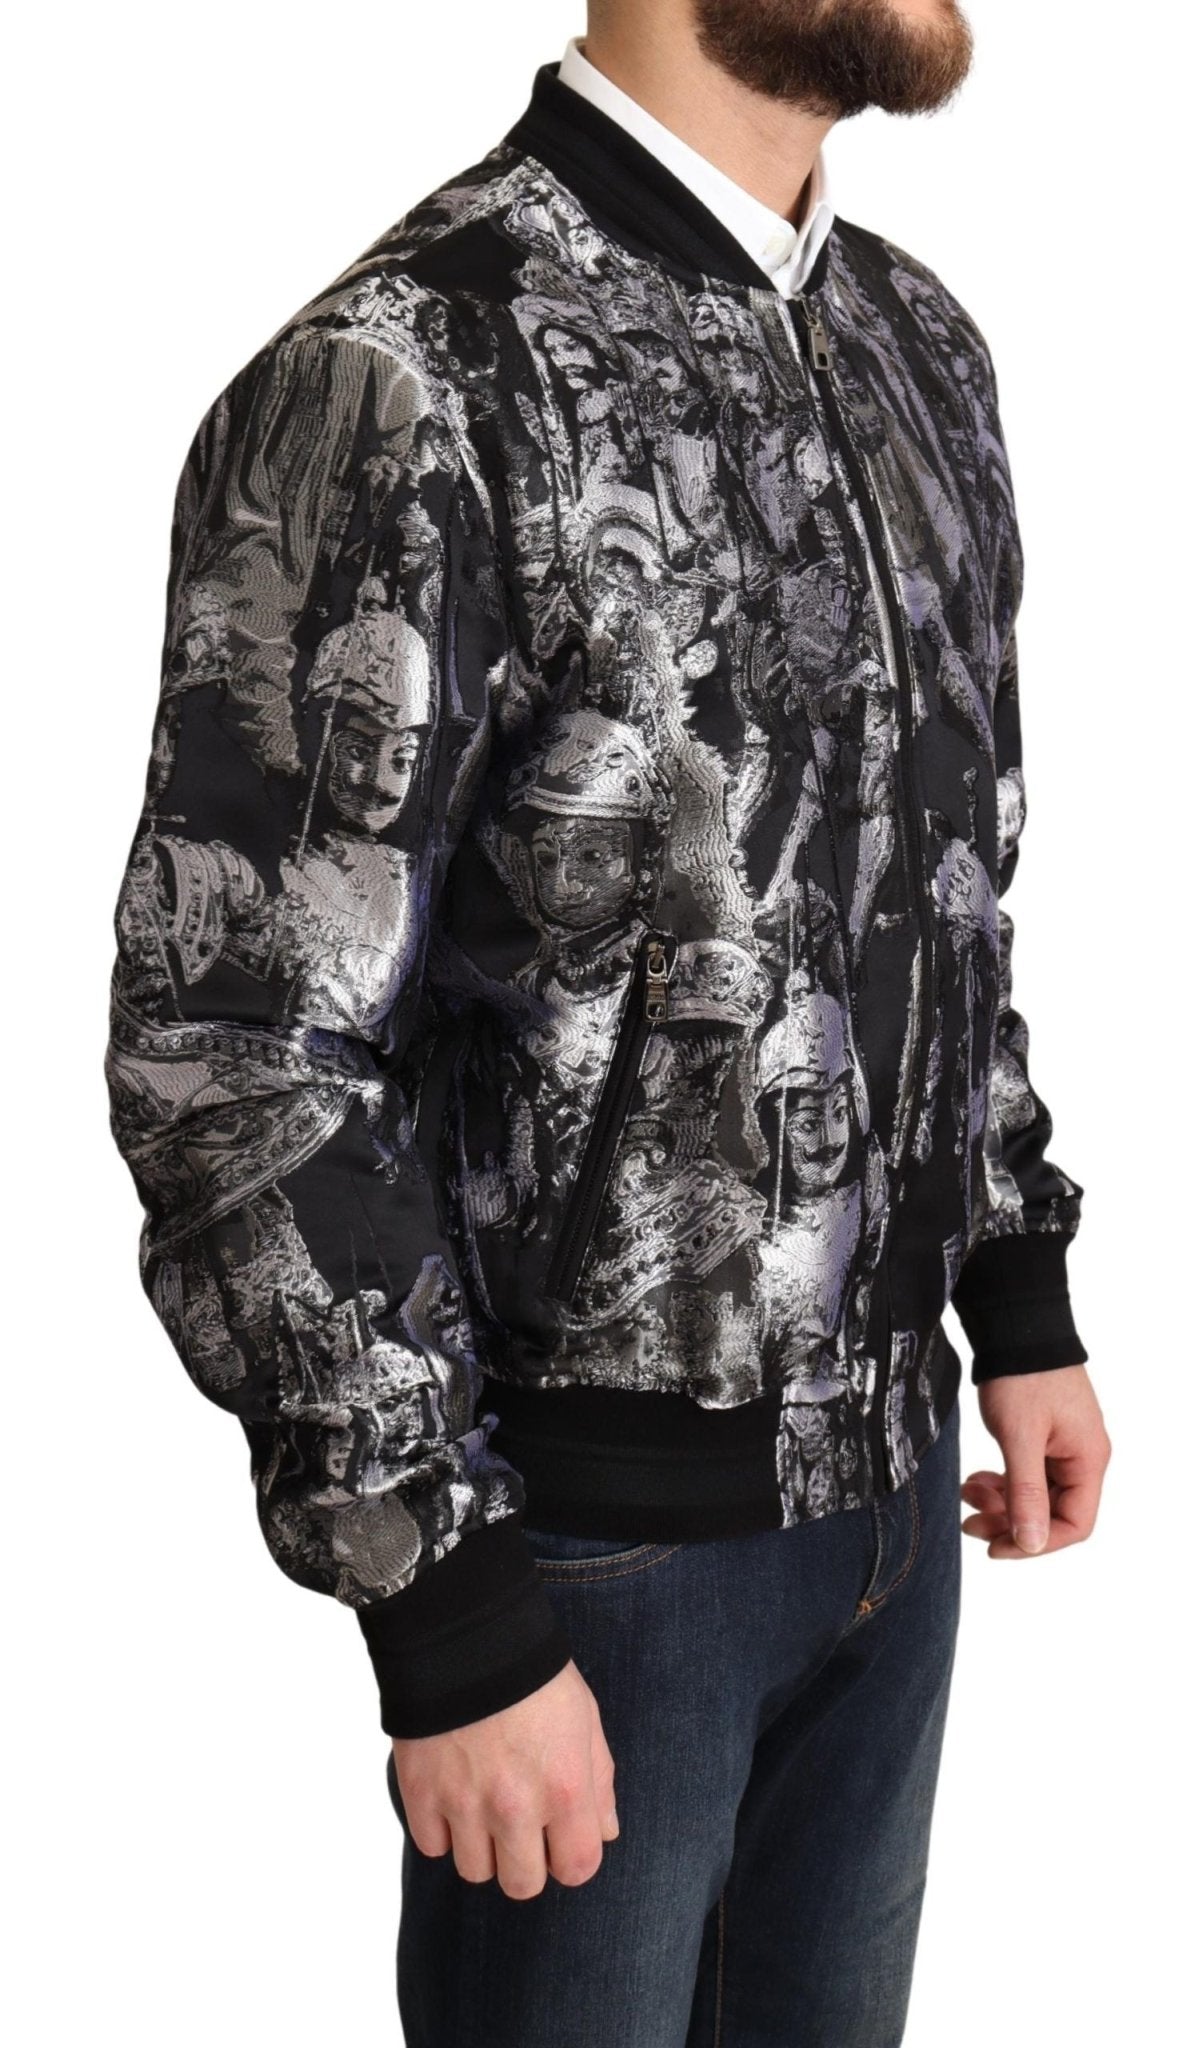 Dolce & Gabbana Elegant Black Bomber Jacket with Silver Details